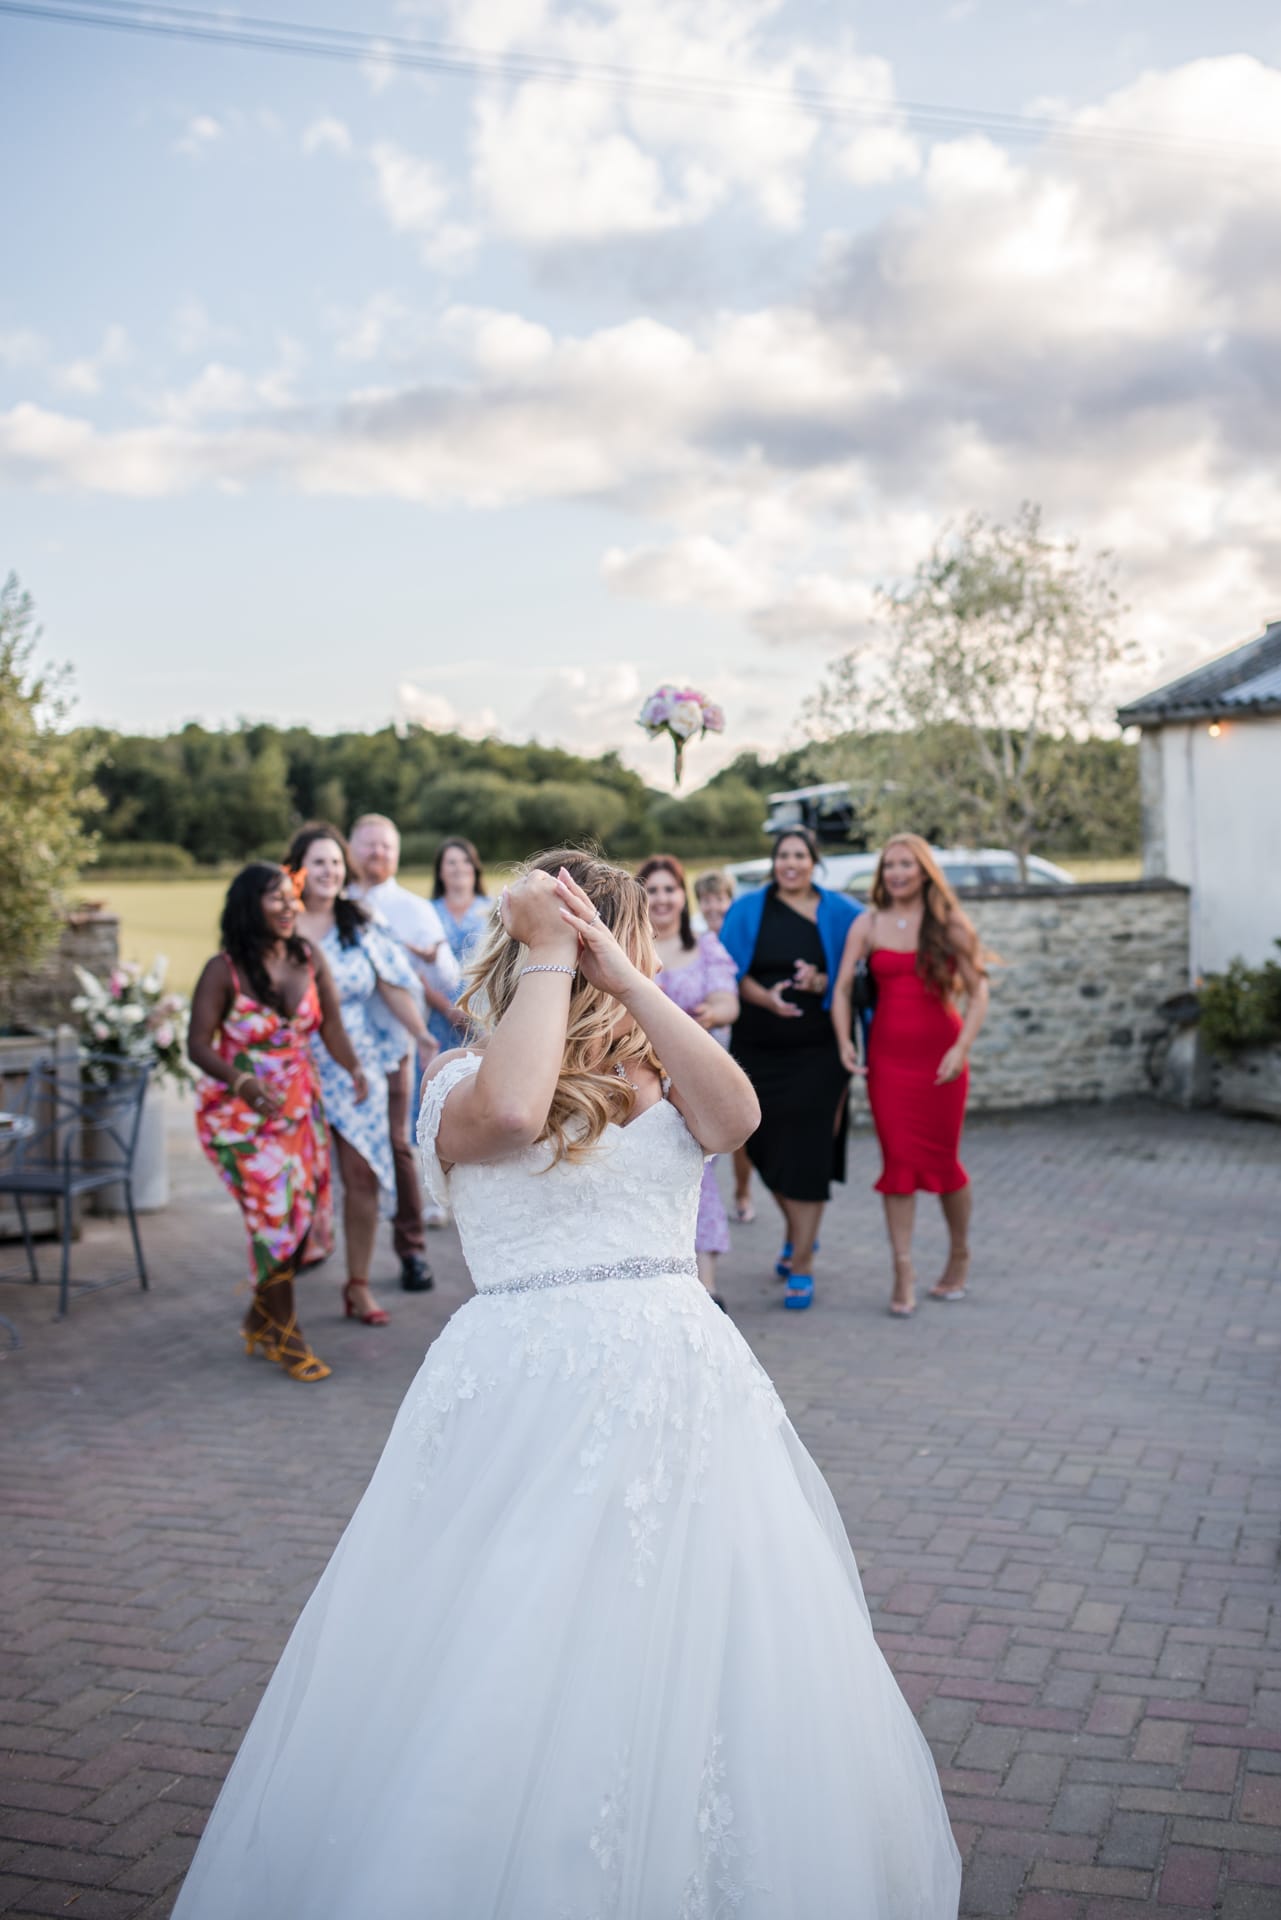 Bride throwing wedding bouquet to girls behind her at Stratton Court Barn Wedding Venue